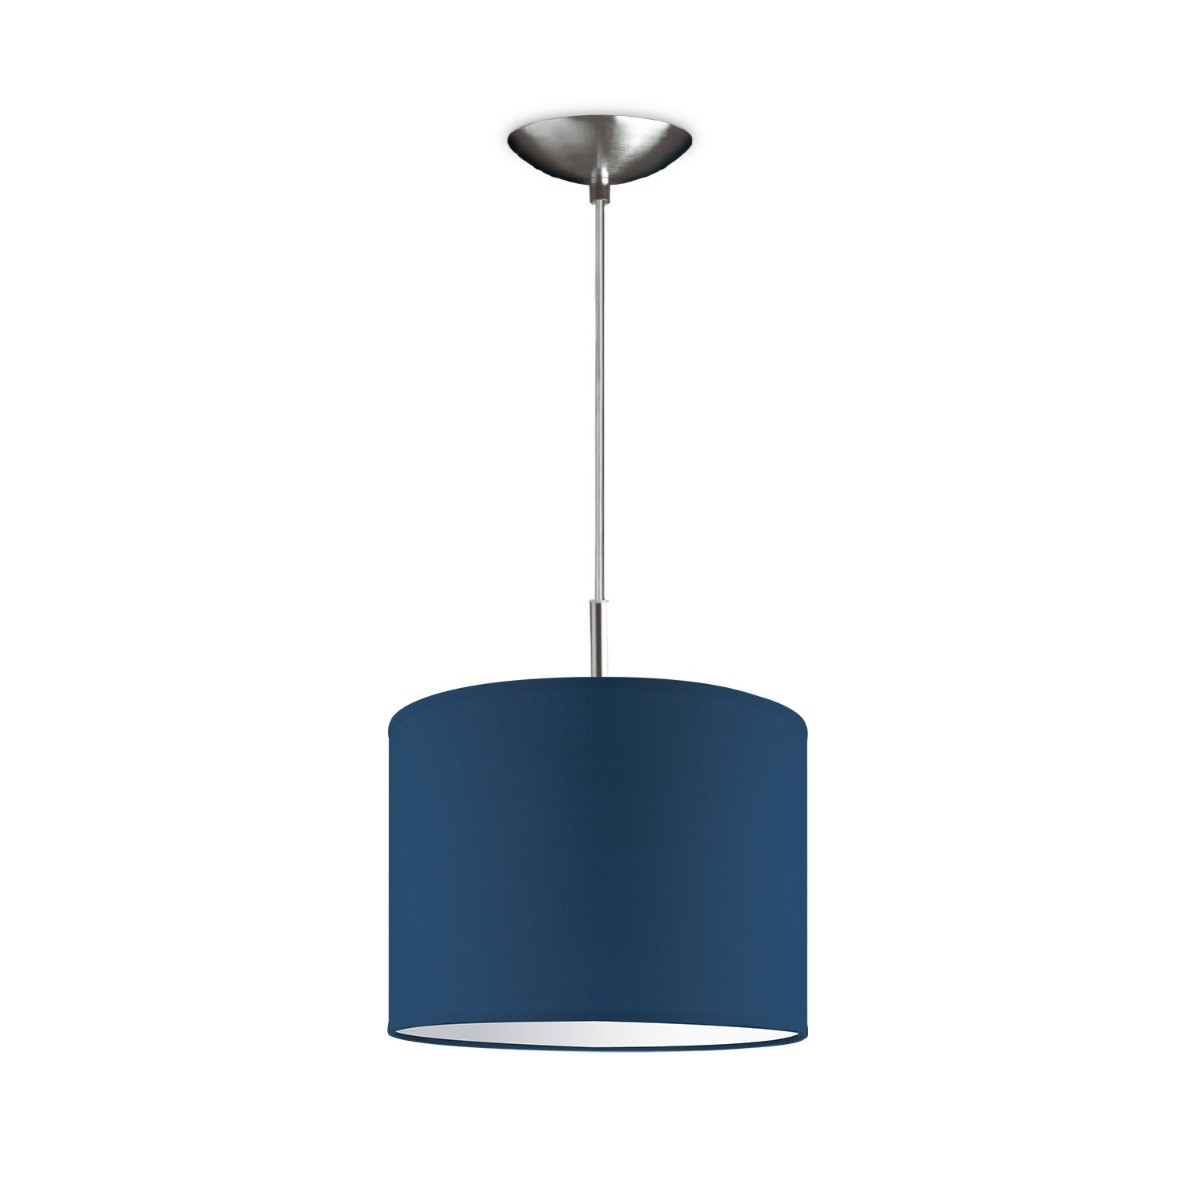 Light depot - hanglamp tube deluxe bling Ø 25 cm - blauw - Outlet